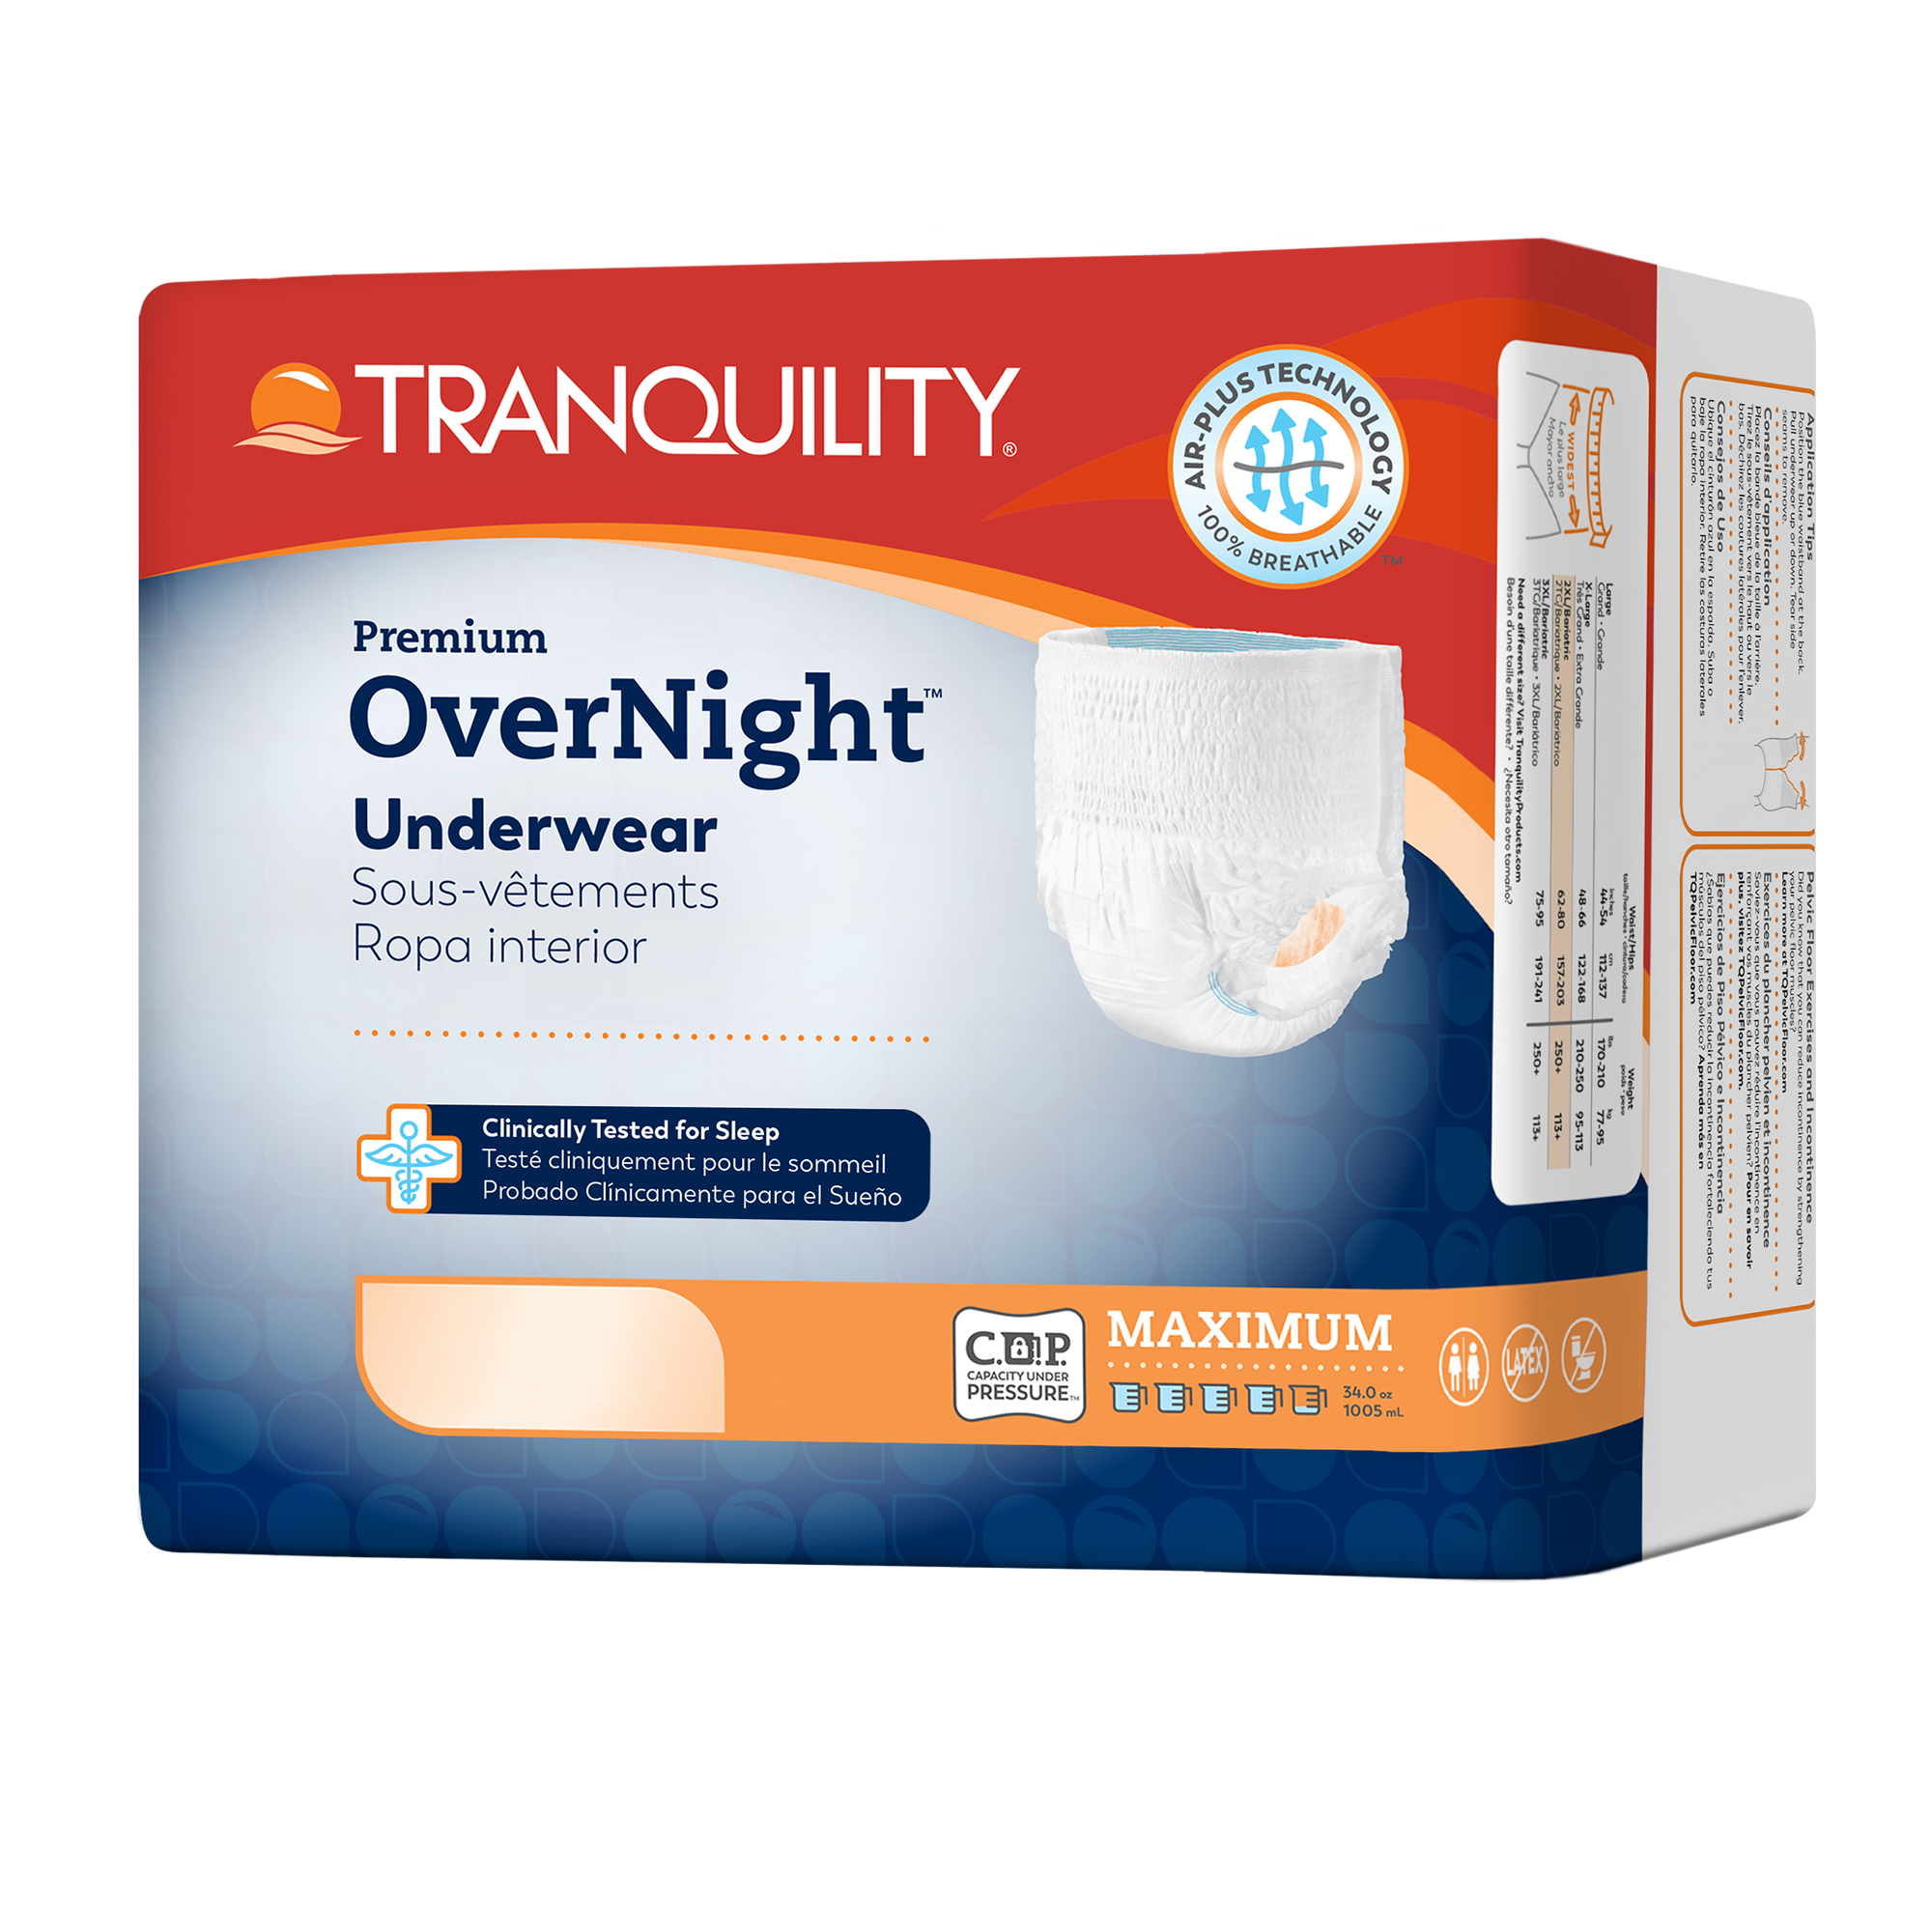 Tranquility Premium Overnight Underwear